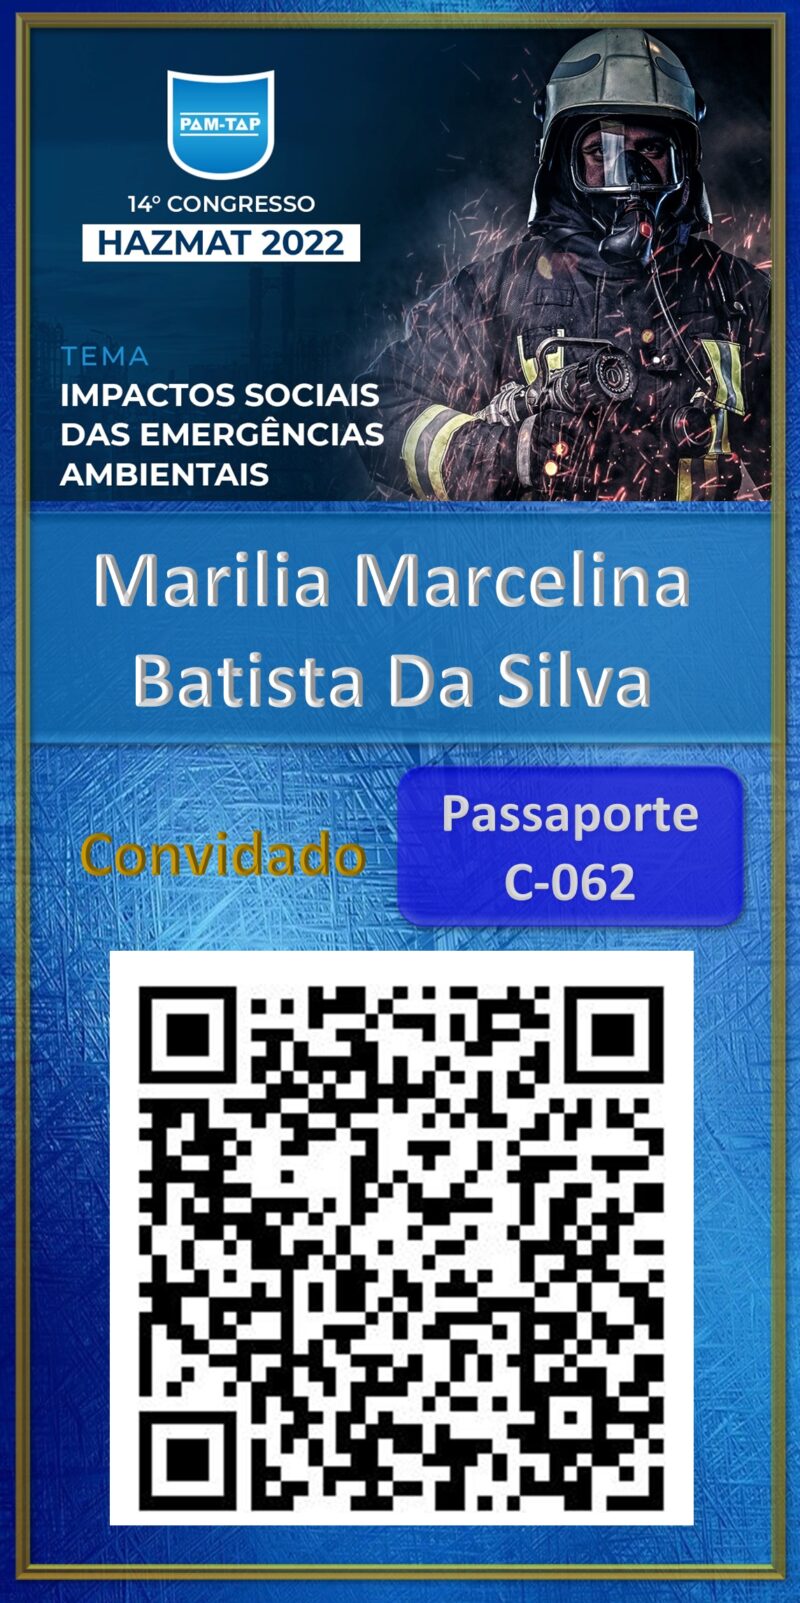 Marilia Marcelina Batista Da Silva-Hazmat 2022-Aluno